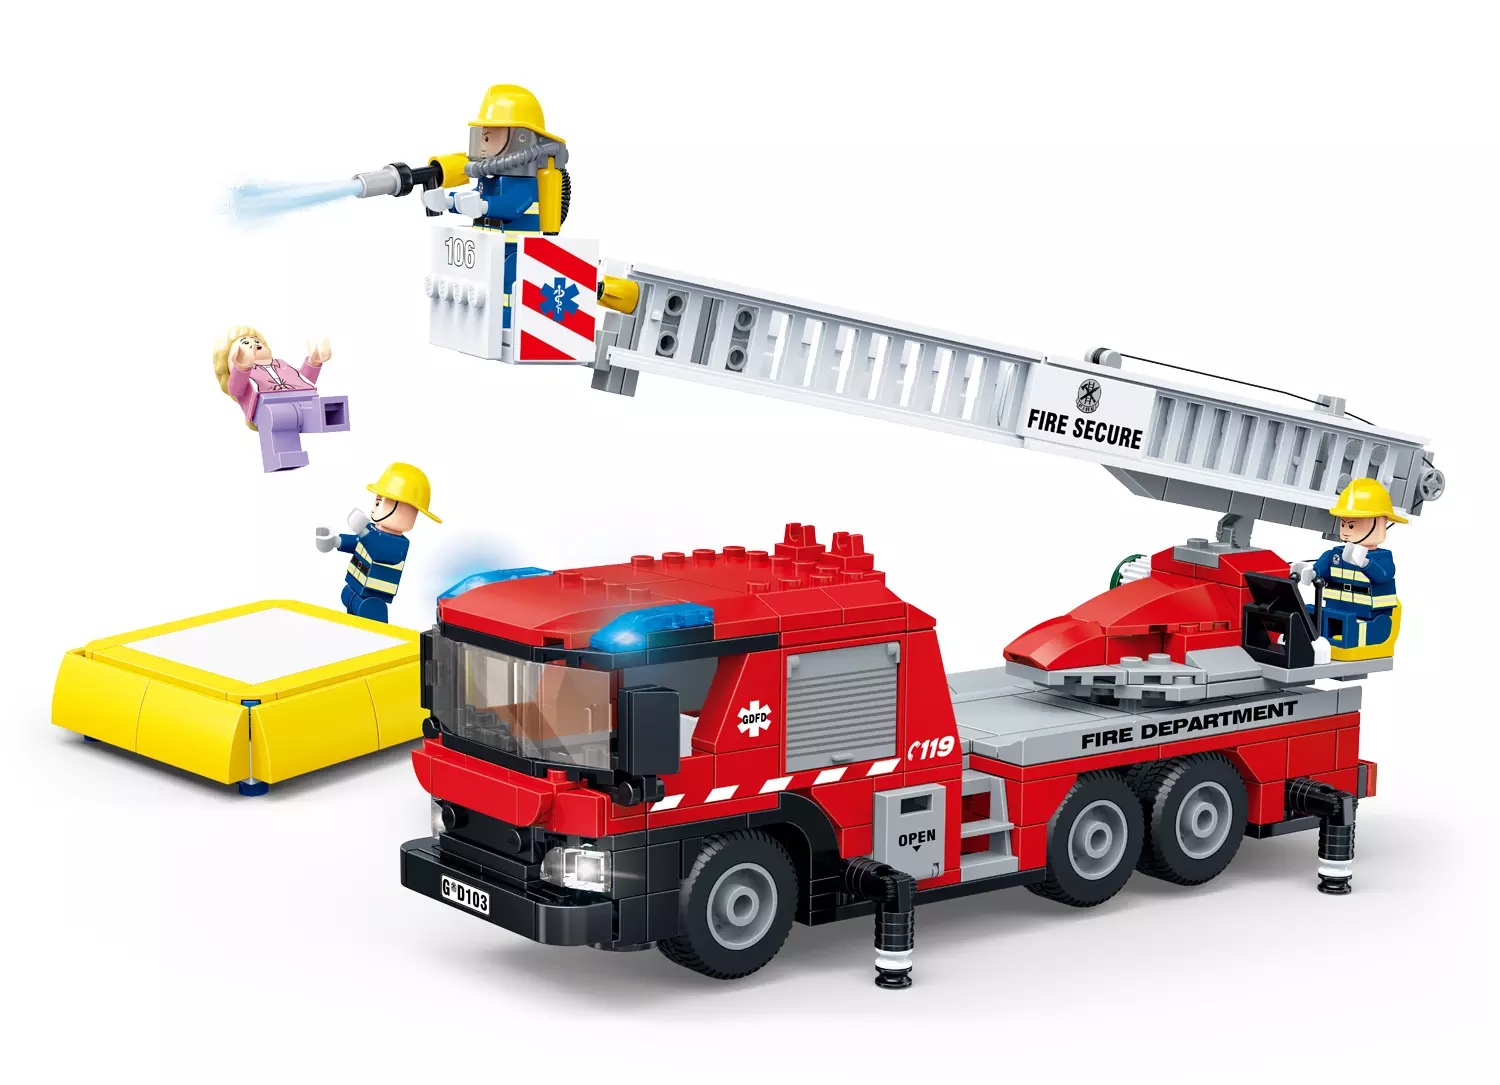 GUDI 9223 Ladder Fire Truck (Пожарный автомобиль)